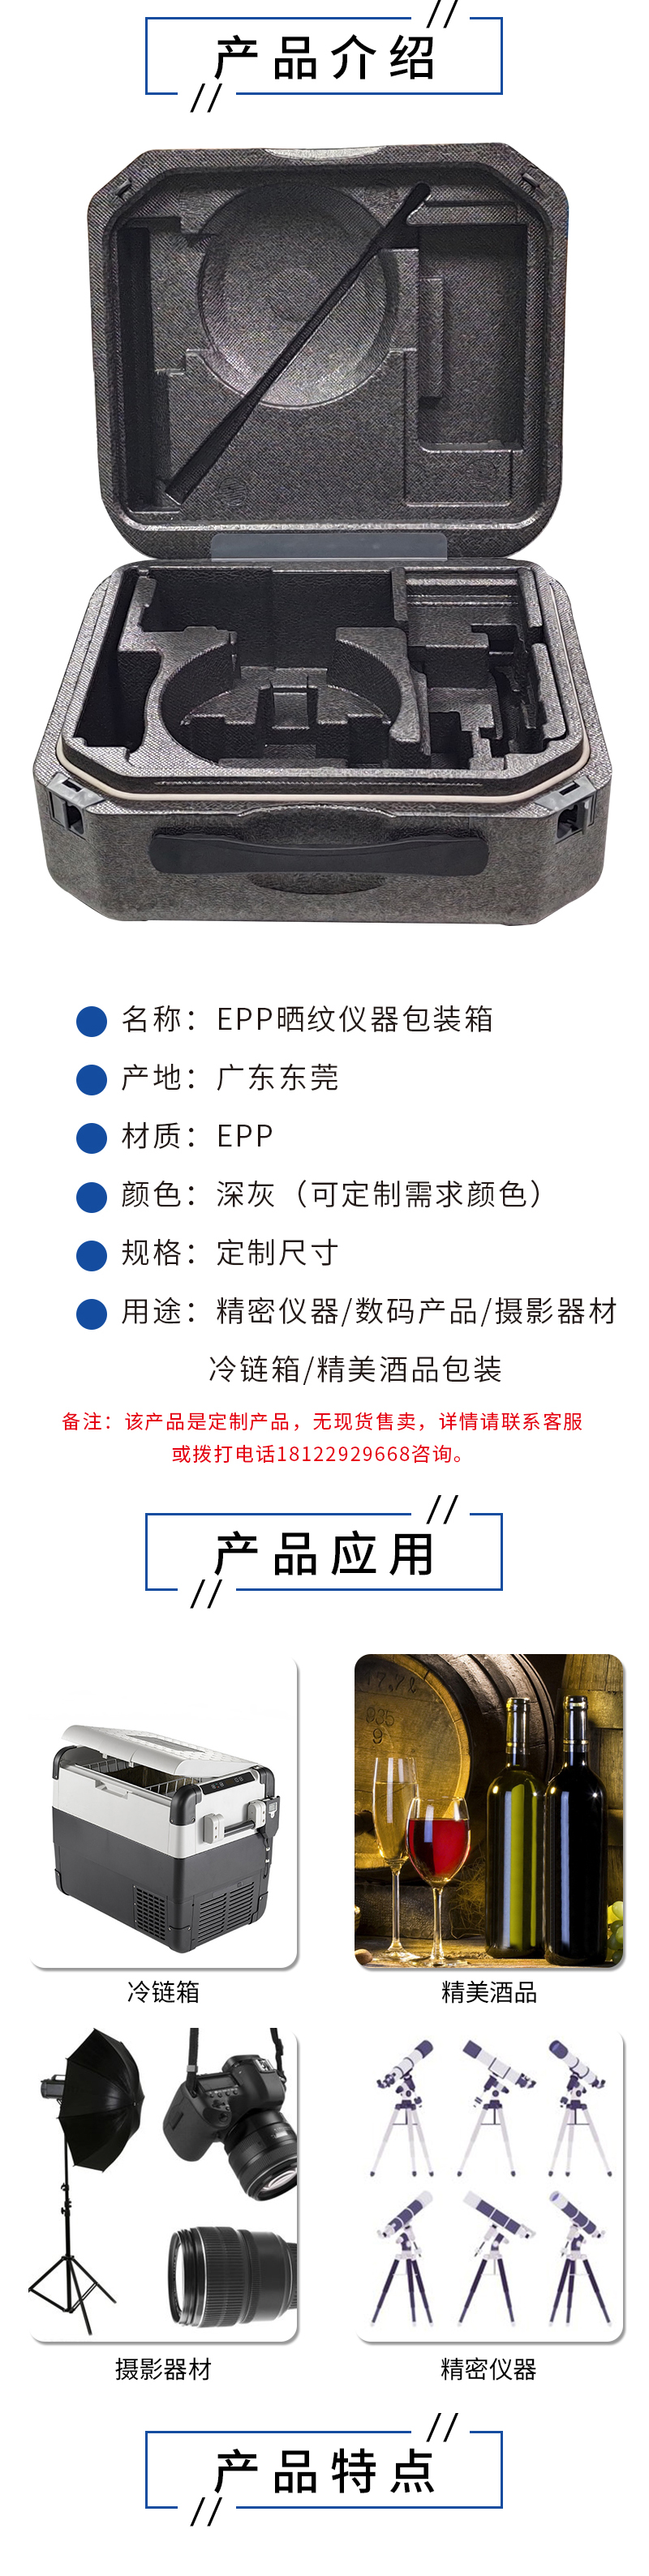 官网富扬EPP晒纹仪器包装箱_02.jpg